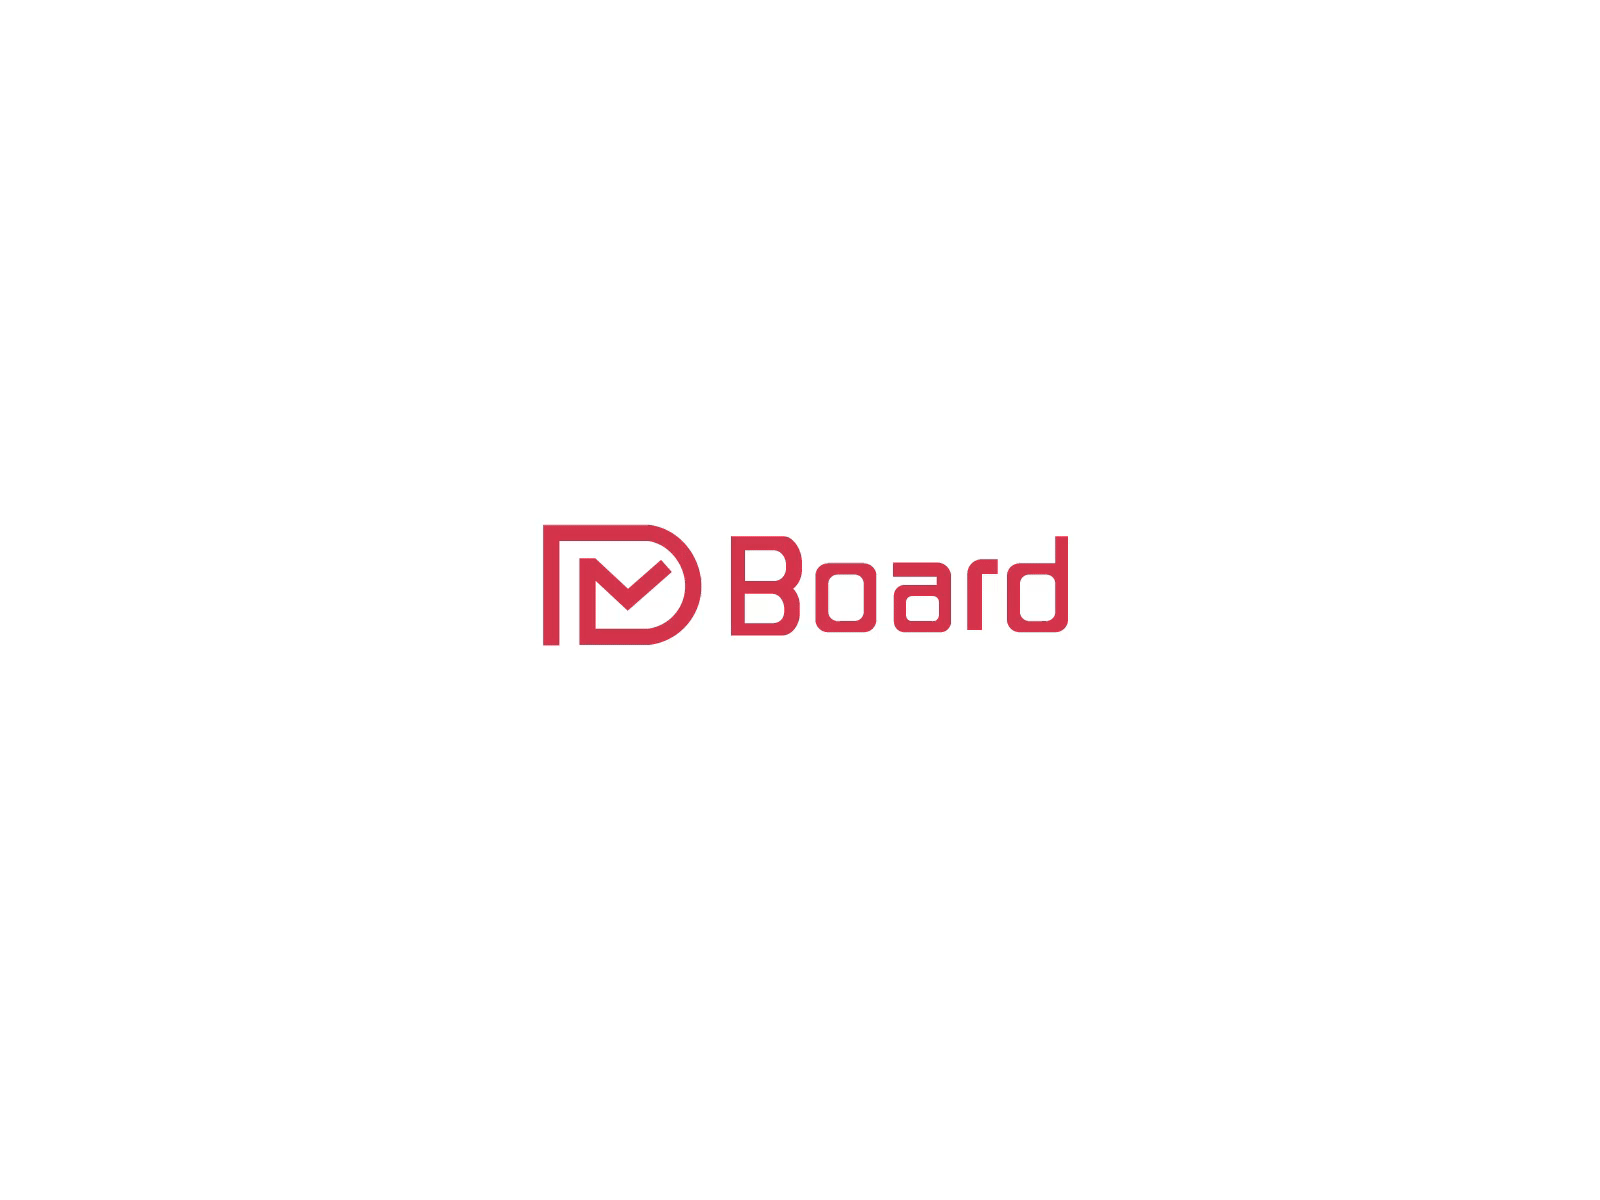 DM board